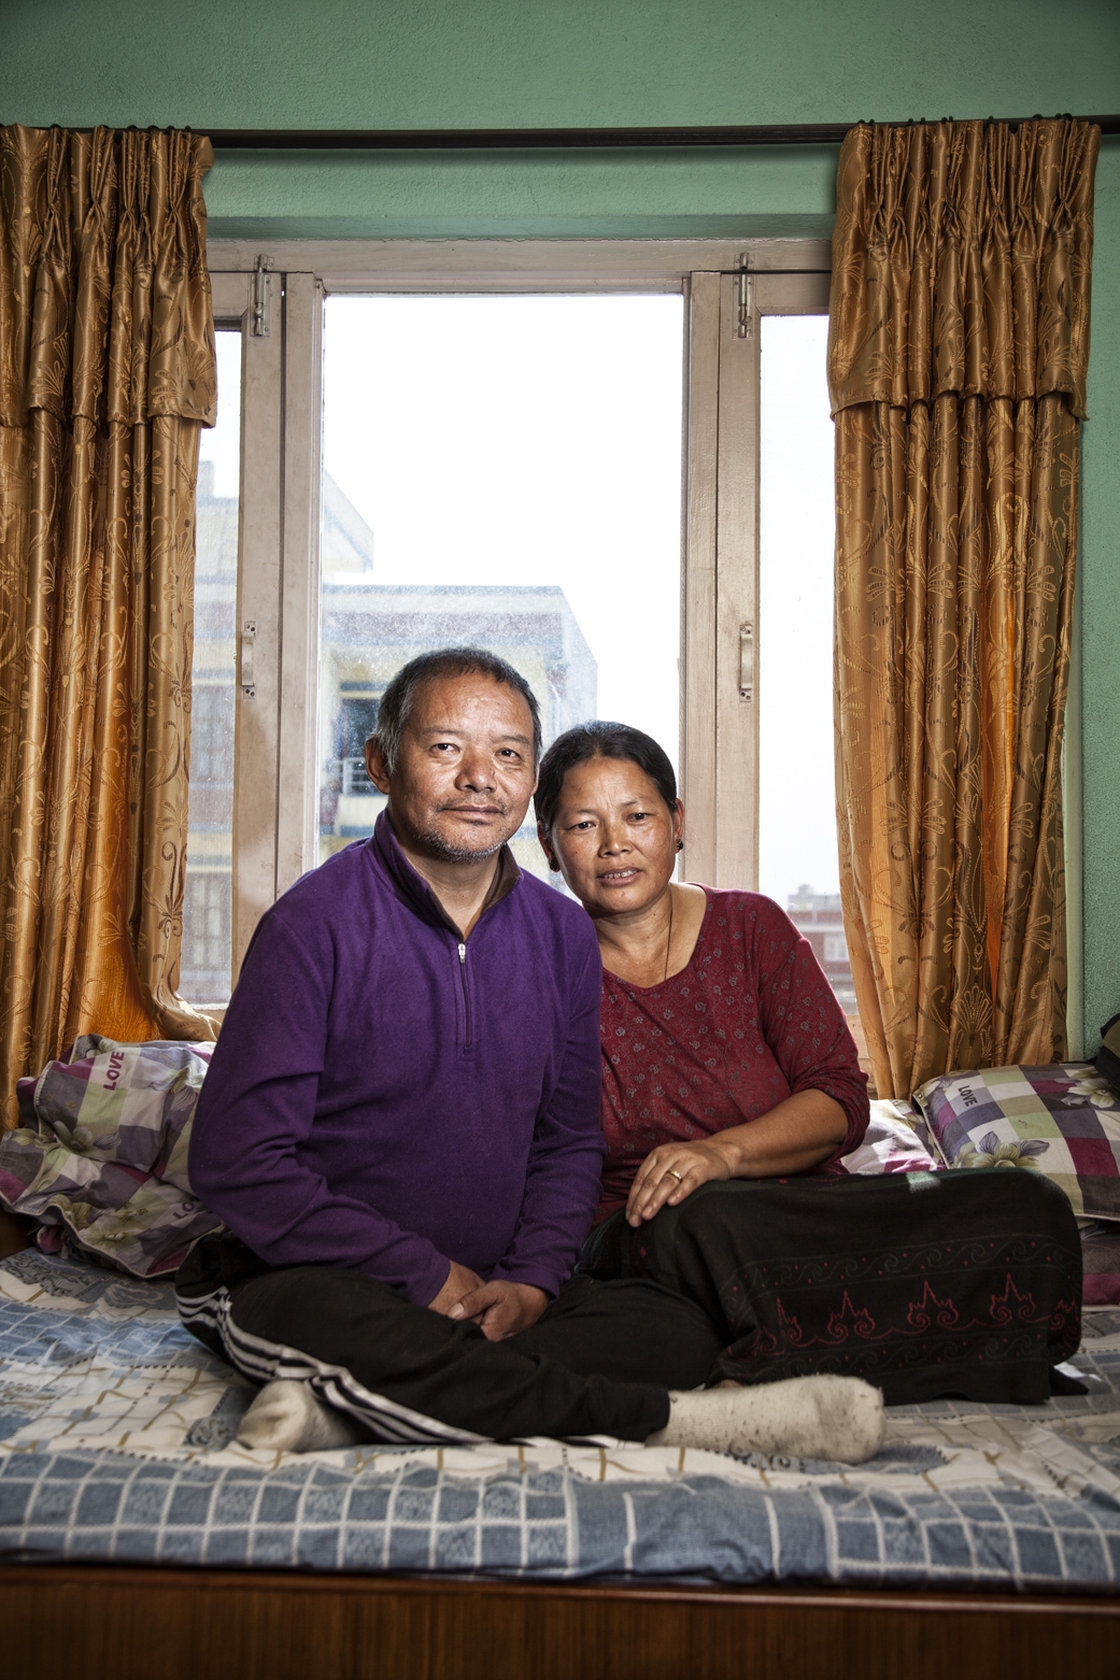  54-х летний Анг Темба (Ang Temba), перенес инсульт в экспедиции на Эверест в 2006 году. Вопреки советам врачей, он вернулся на Эверест в 2007 году и получил второй инсульт вскоре после возвращения. Сейчас он парализован и не может говорить. На фото он сидит со своей женой, Furba, в их доме в Катманду